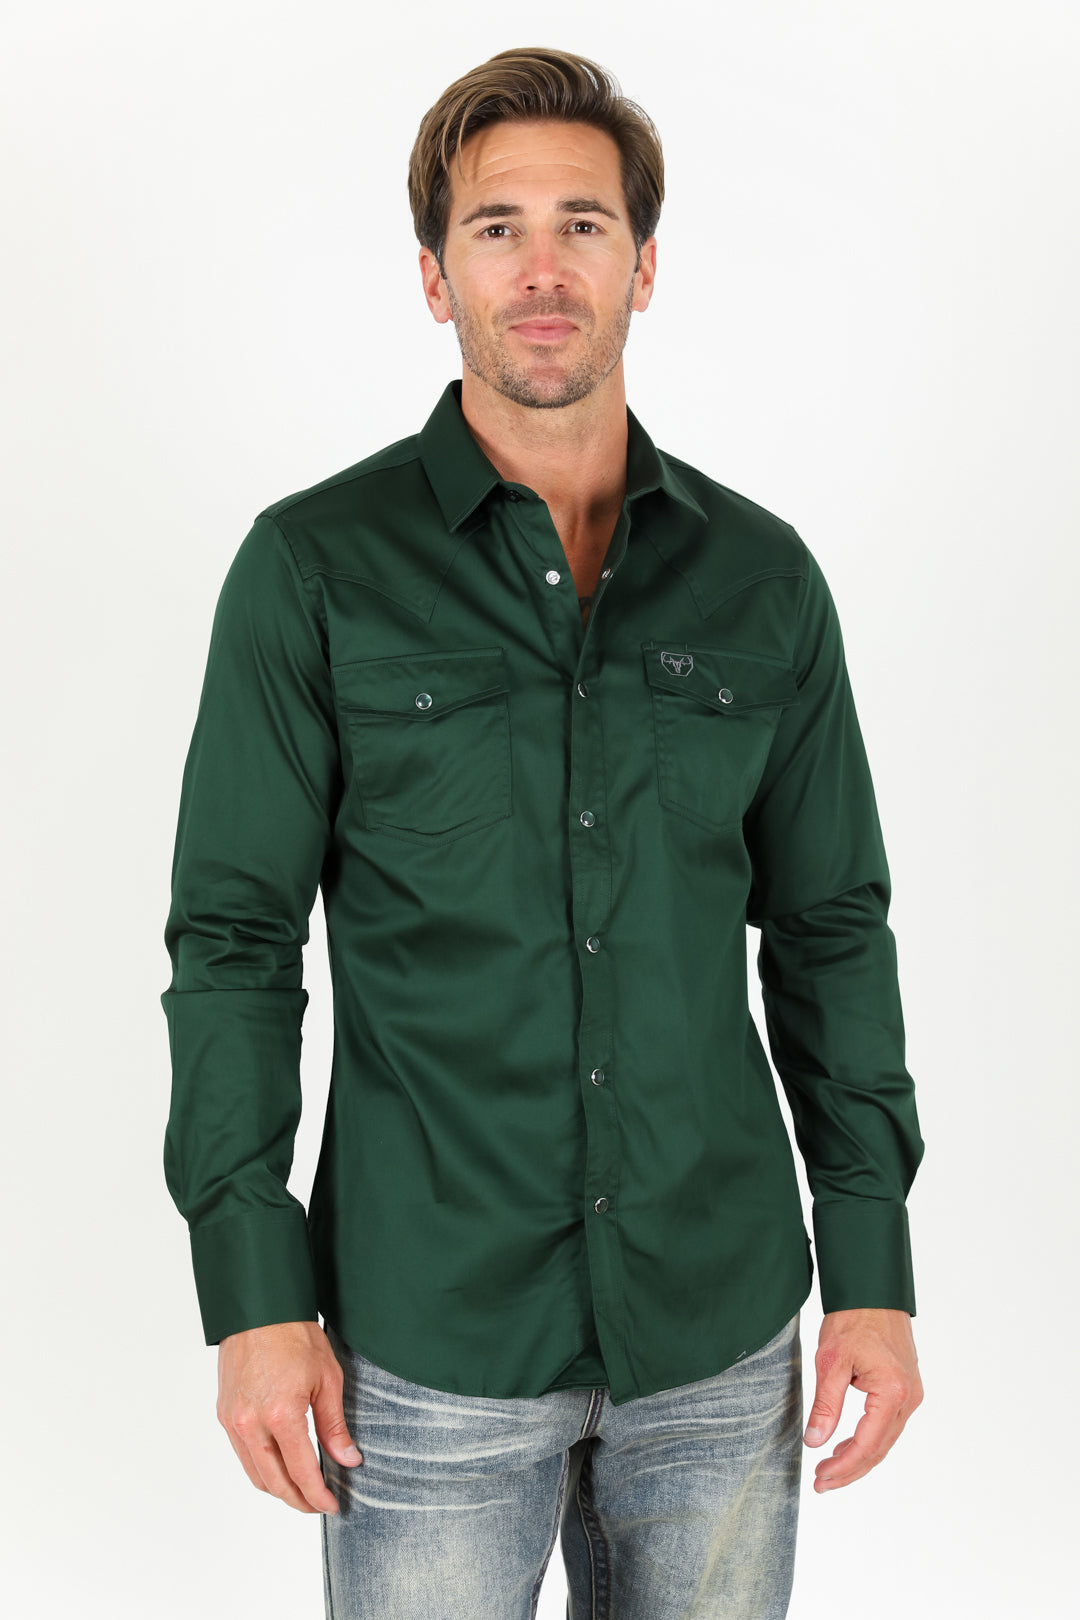 Men's Modern Fit Solid Green Dress Shirt